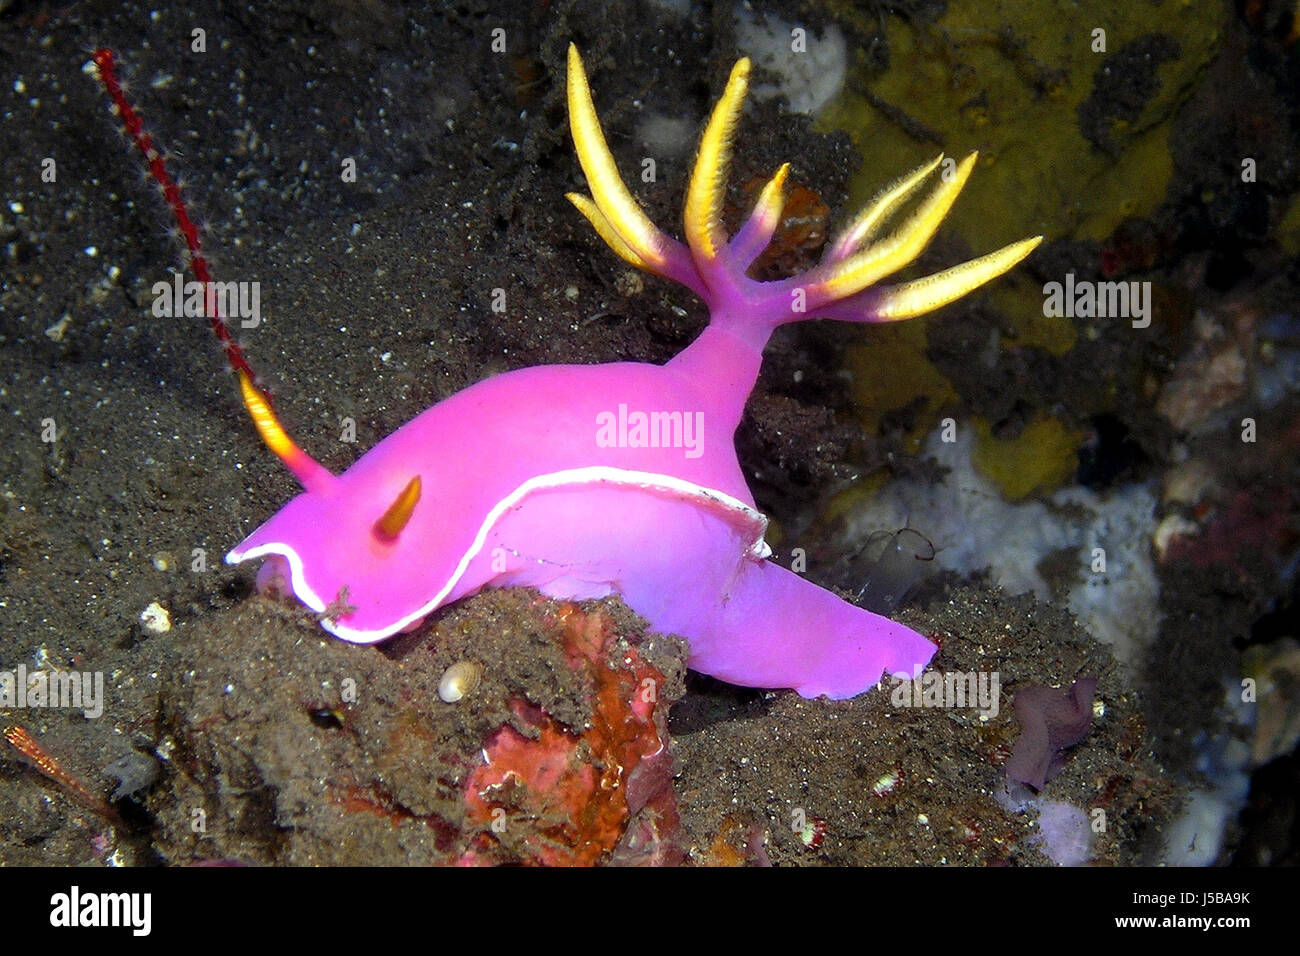 asia bali indonesia underwater pacific salt water sea ocean water slug snail Stock Photo